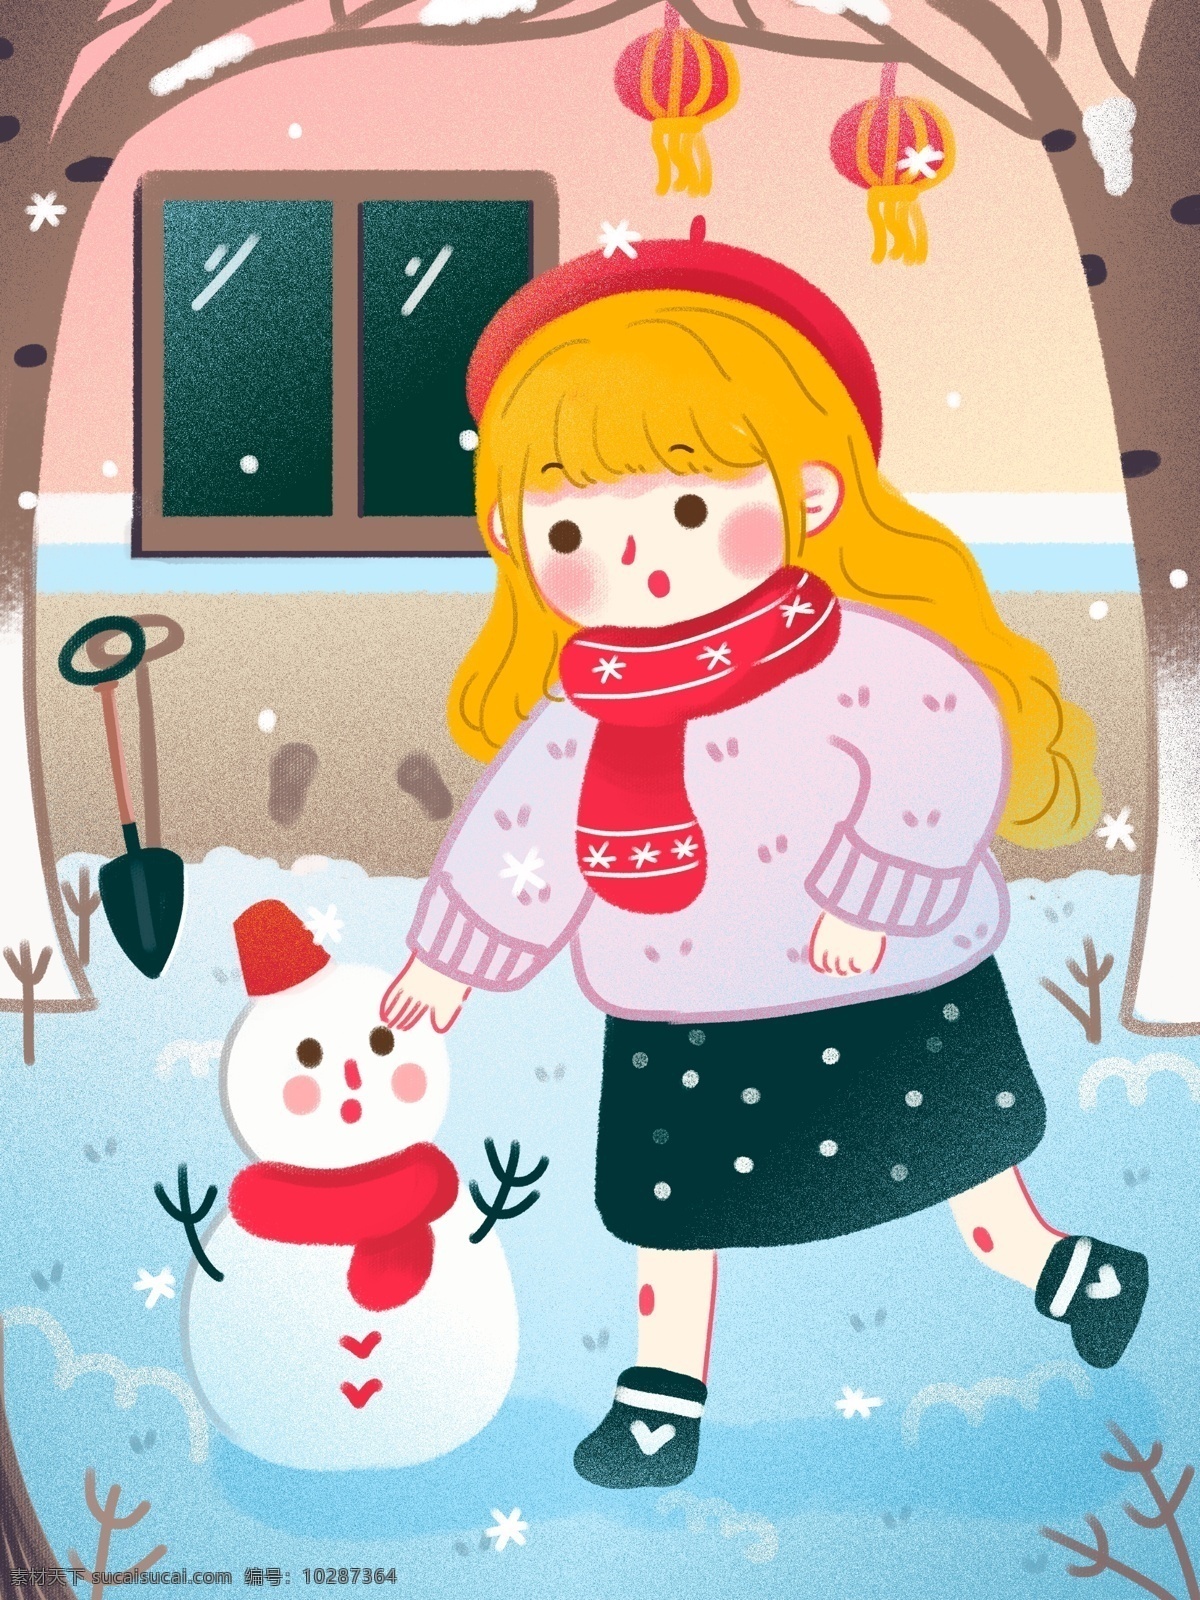 冬天 你好 新年 治愈 系 扁平 院子 里 堆 雪人 女孩 可爱 房子 灯笼 圣诞节 雪花 元气 树 铲子 堆雪人 围巾